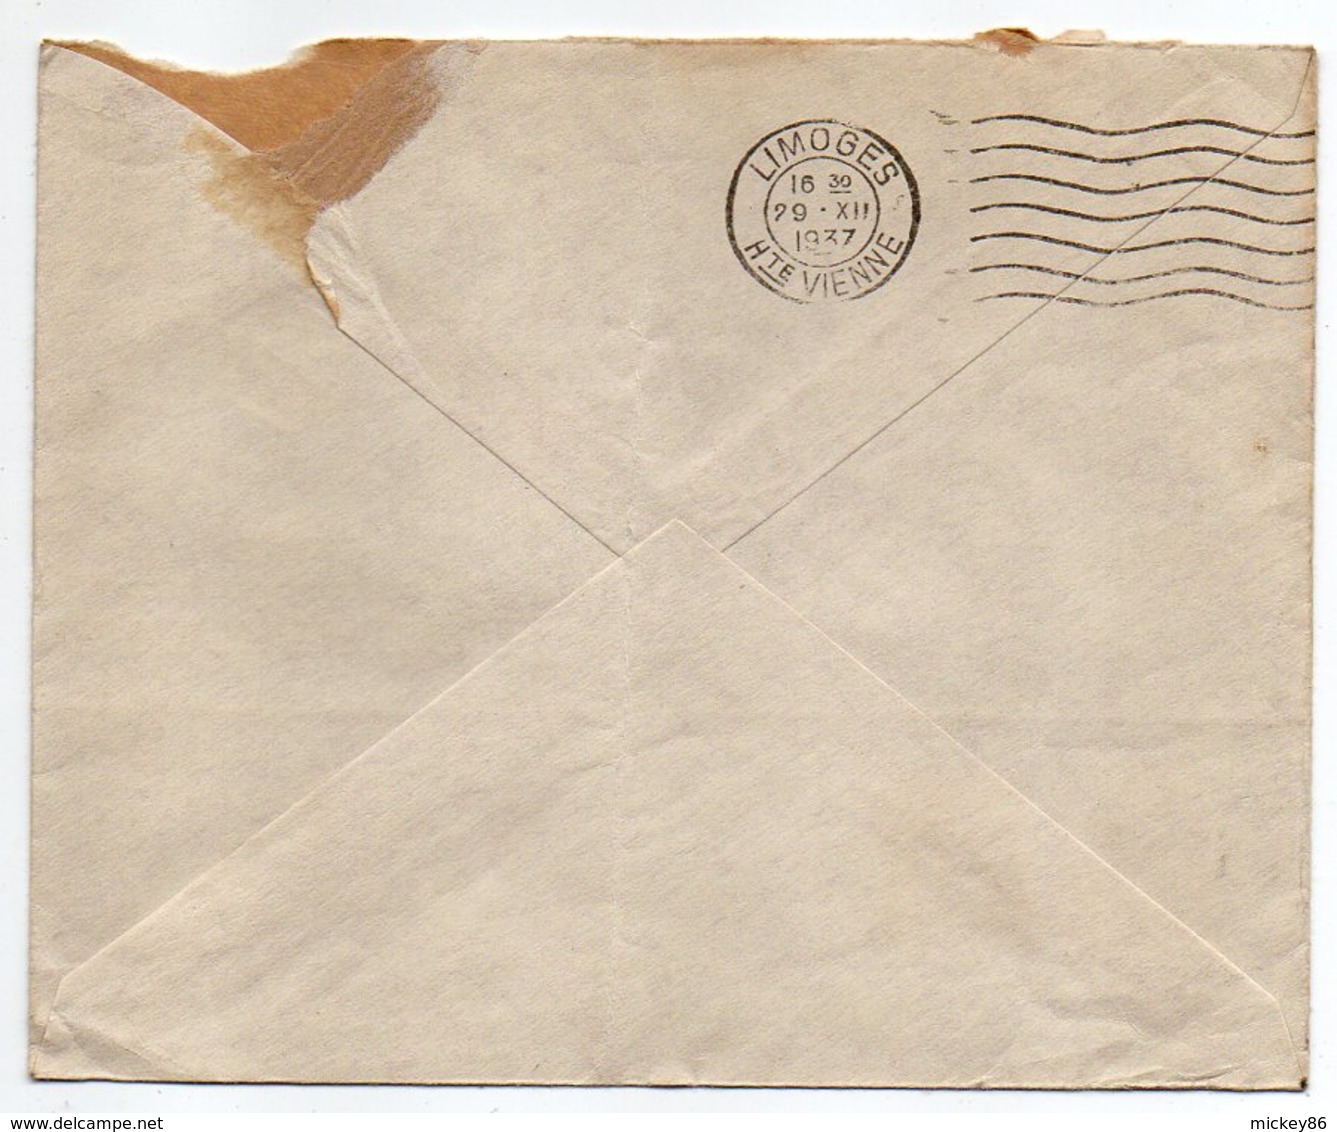 Suisse --1937--Lettre De BERNE   Pour LIMOGES (France) --cachets --enveloppe Personnalisée  Kiefer & Co - Briefe U. Dokumente